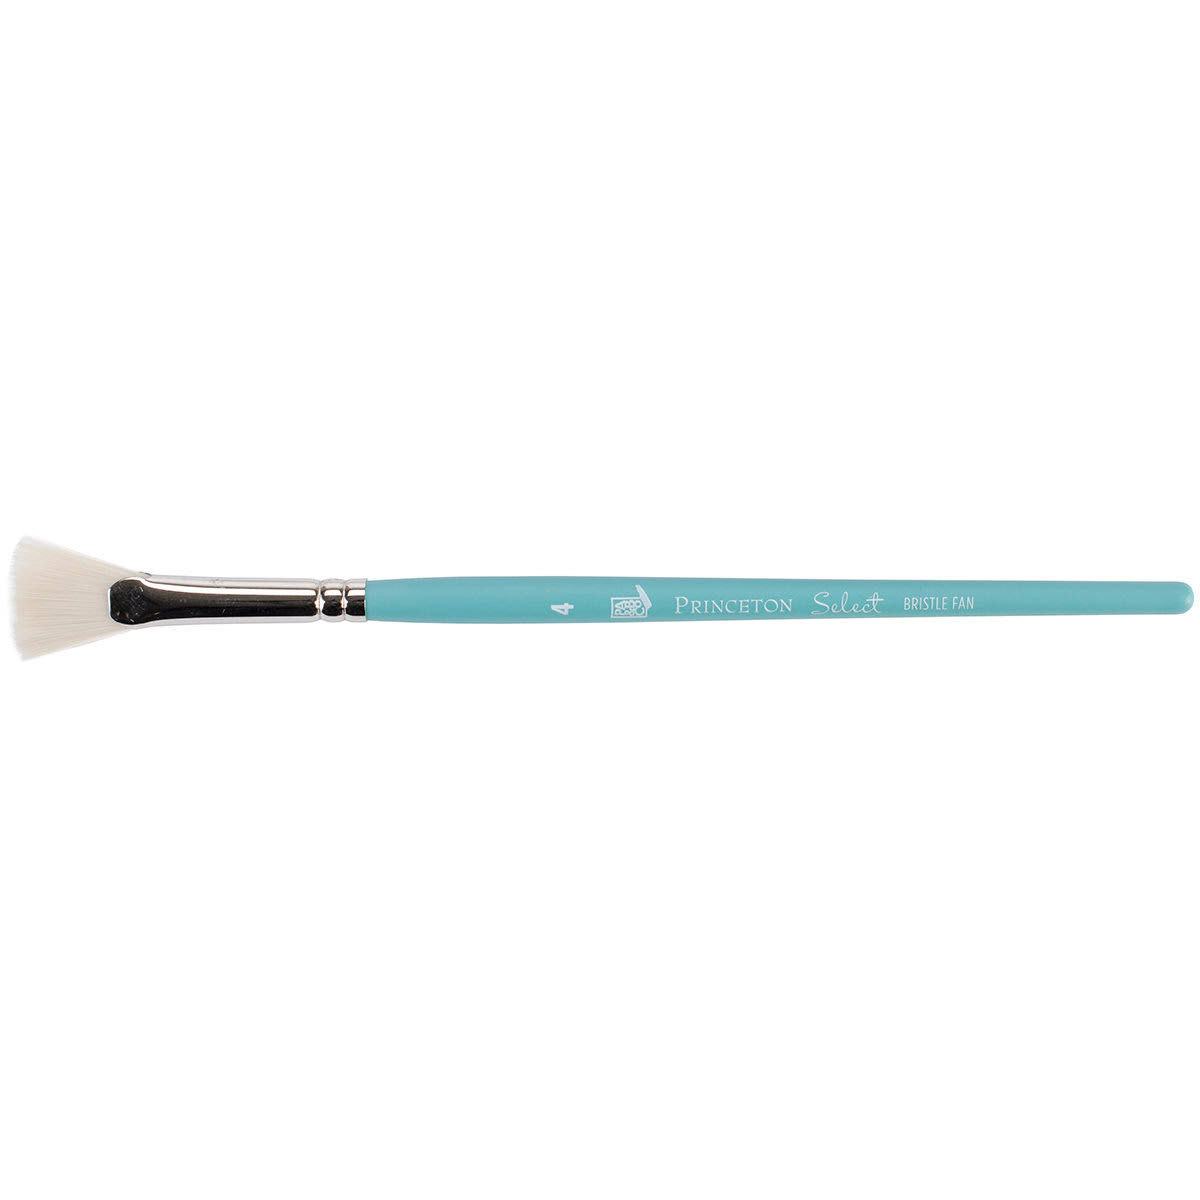 Princeton 3750 Bristle Fan Paintbrush - Size #4